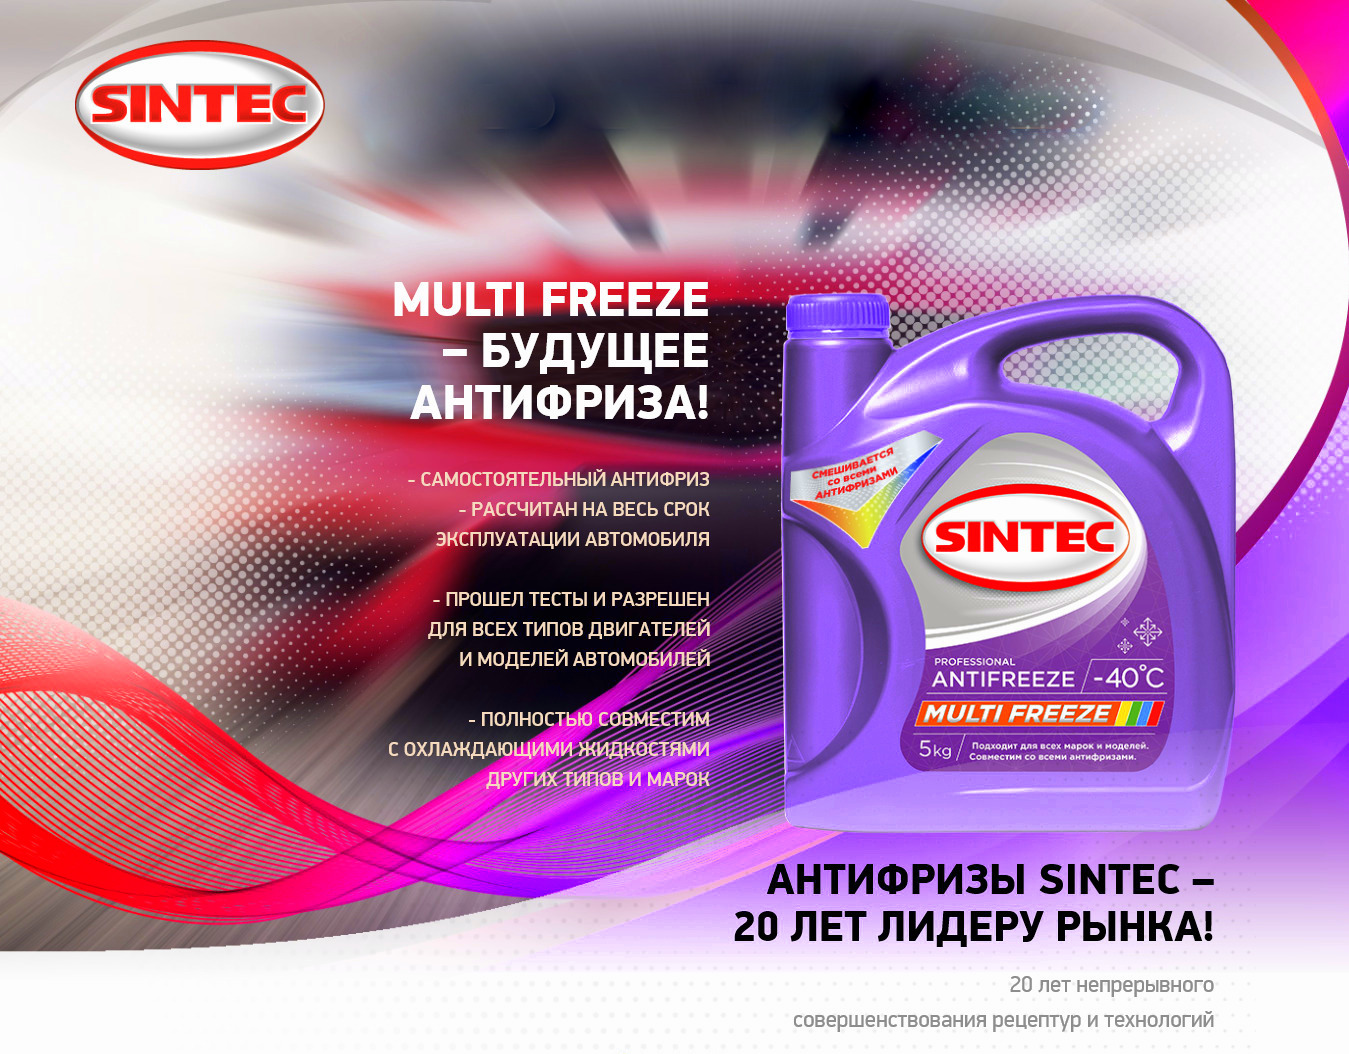 SINTEC Multifreeze - Универсальный антифриз!!!